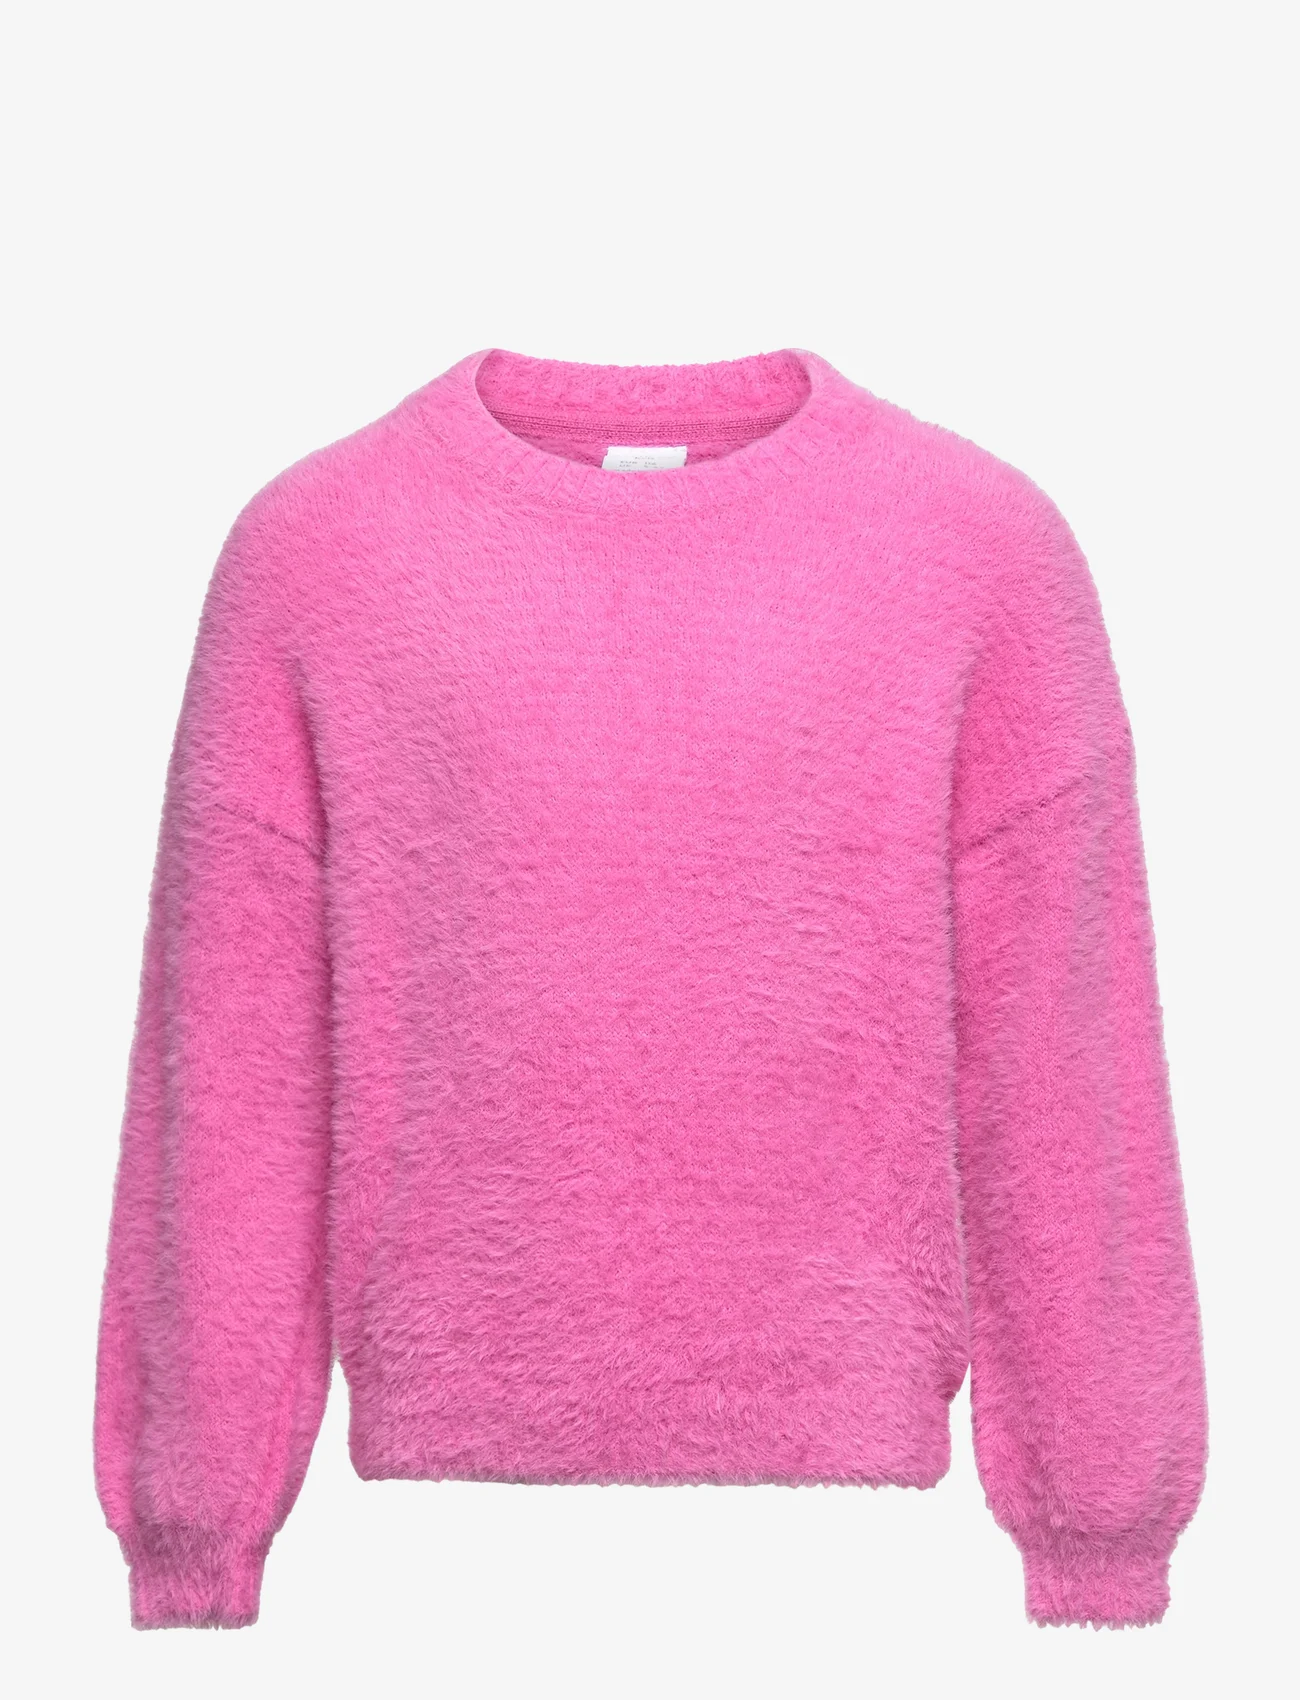 Lindex - Sweater featheryarn - gensere - pink - 0